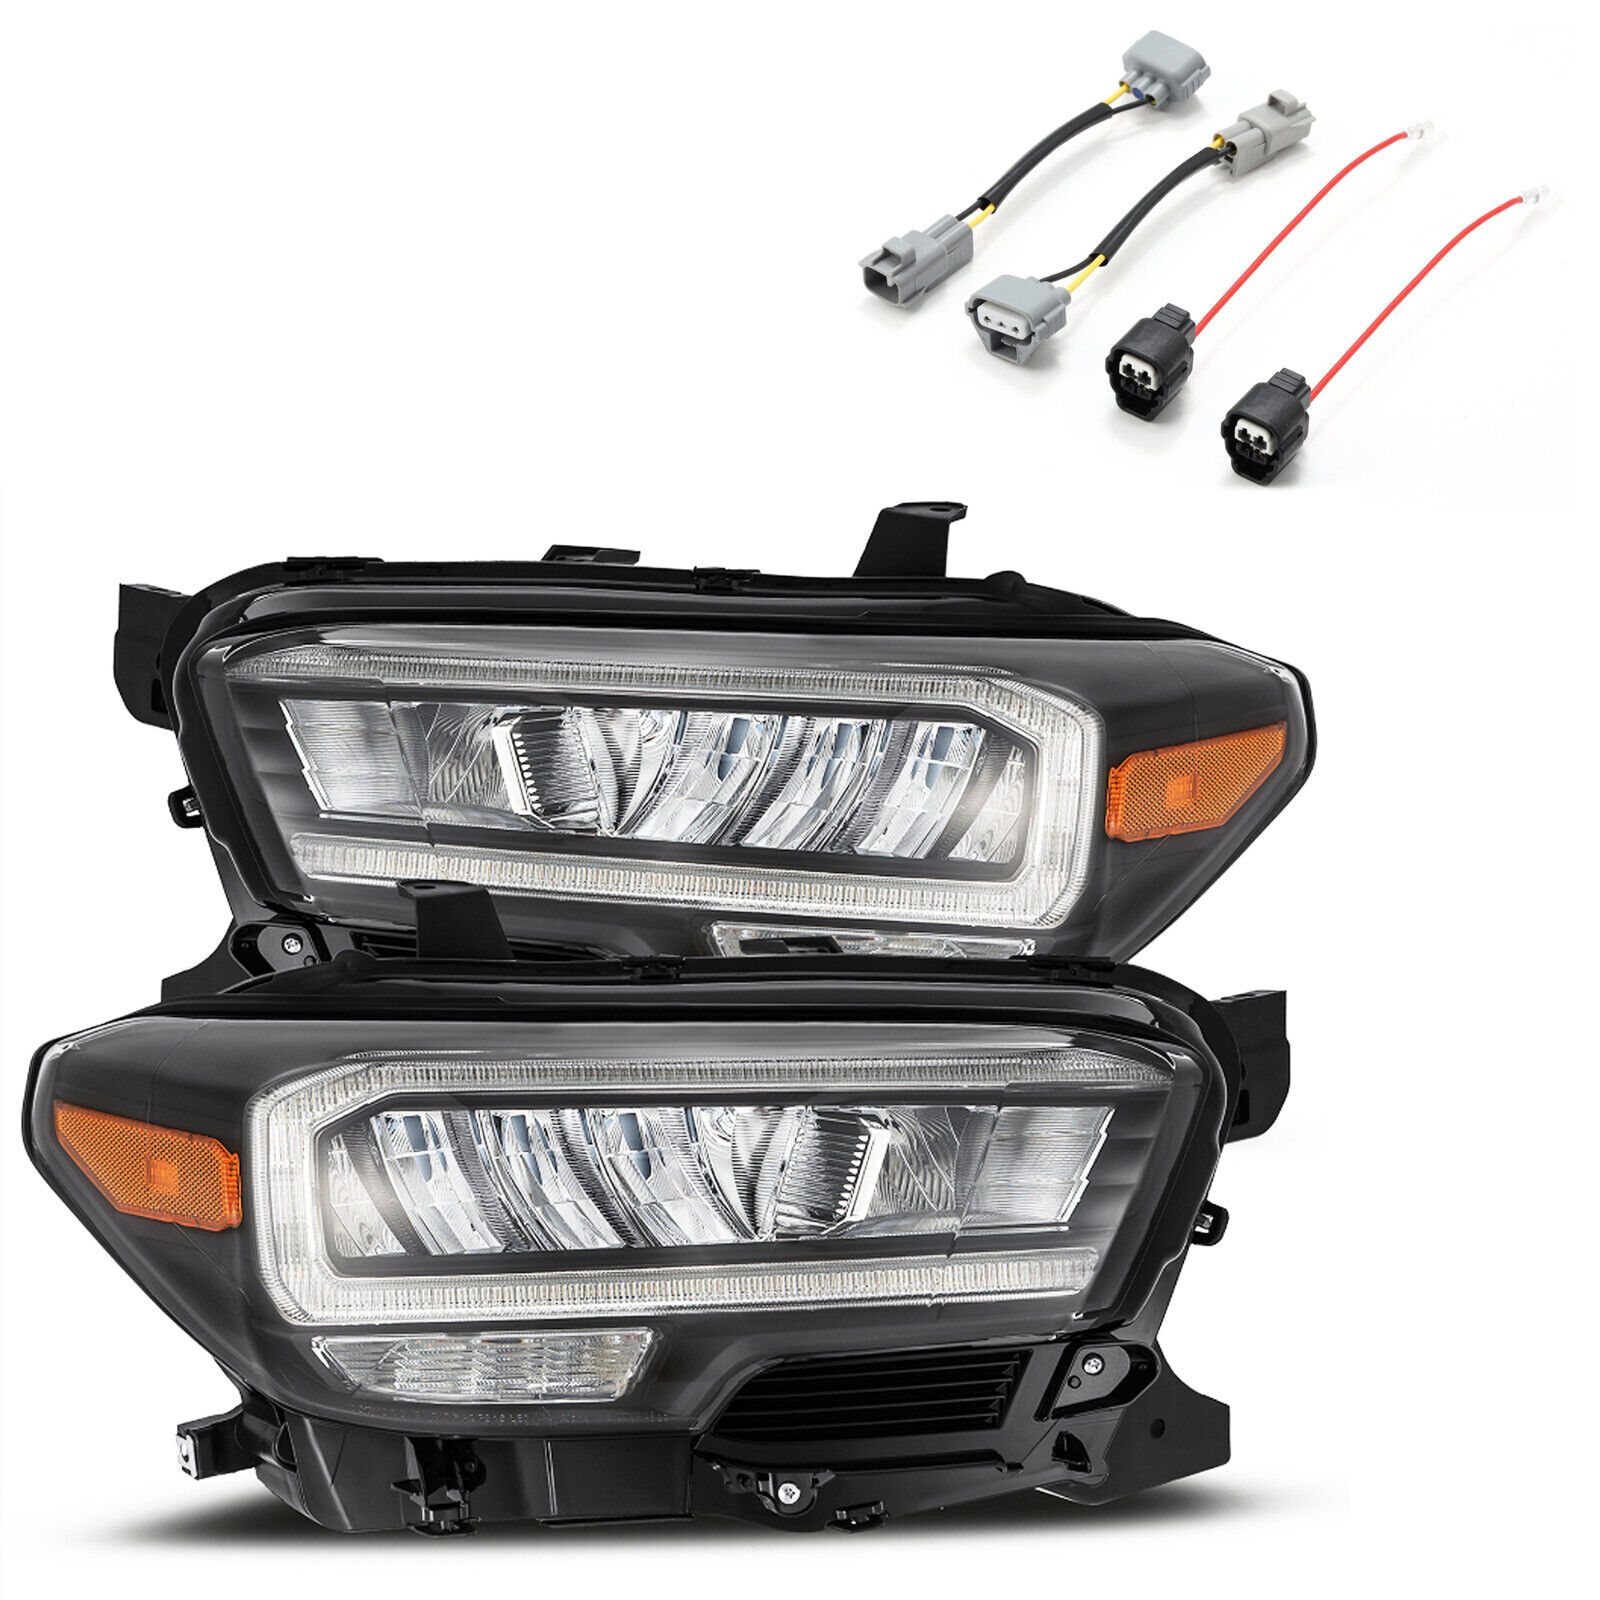 For 16-23 Toyota Tacoma TRD AlphaRex LUXX Black Housing LED Headlight Converter